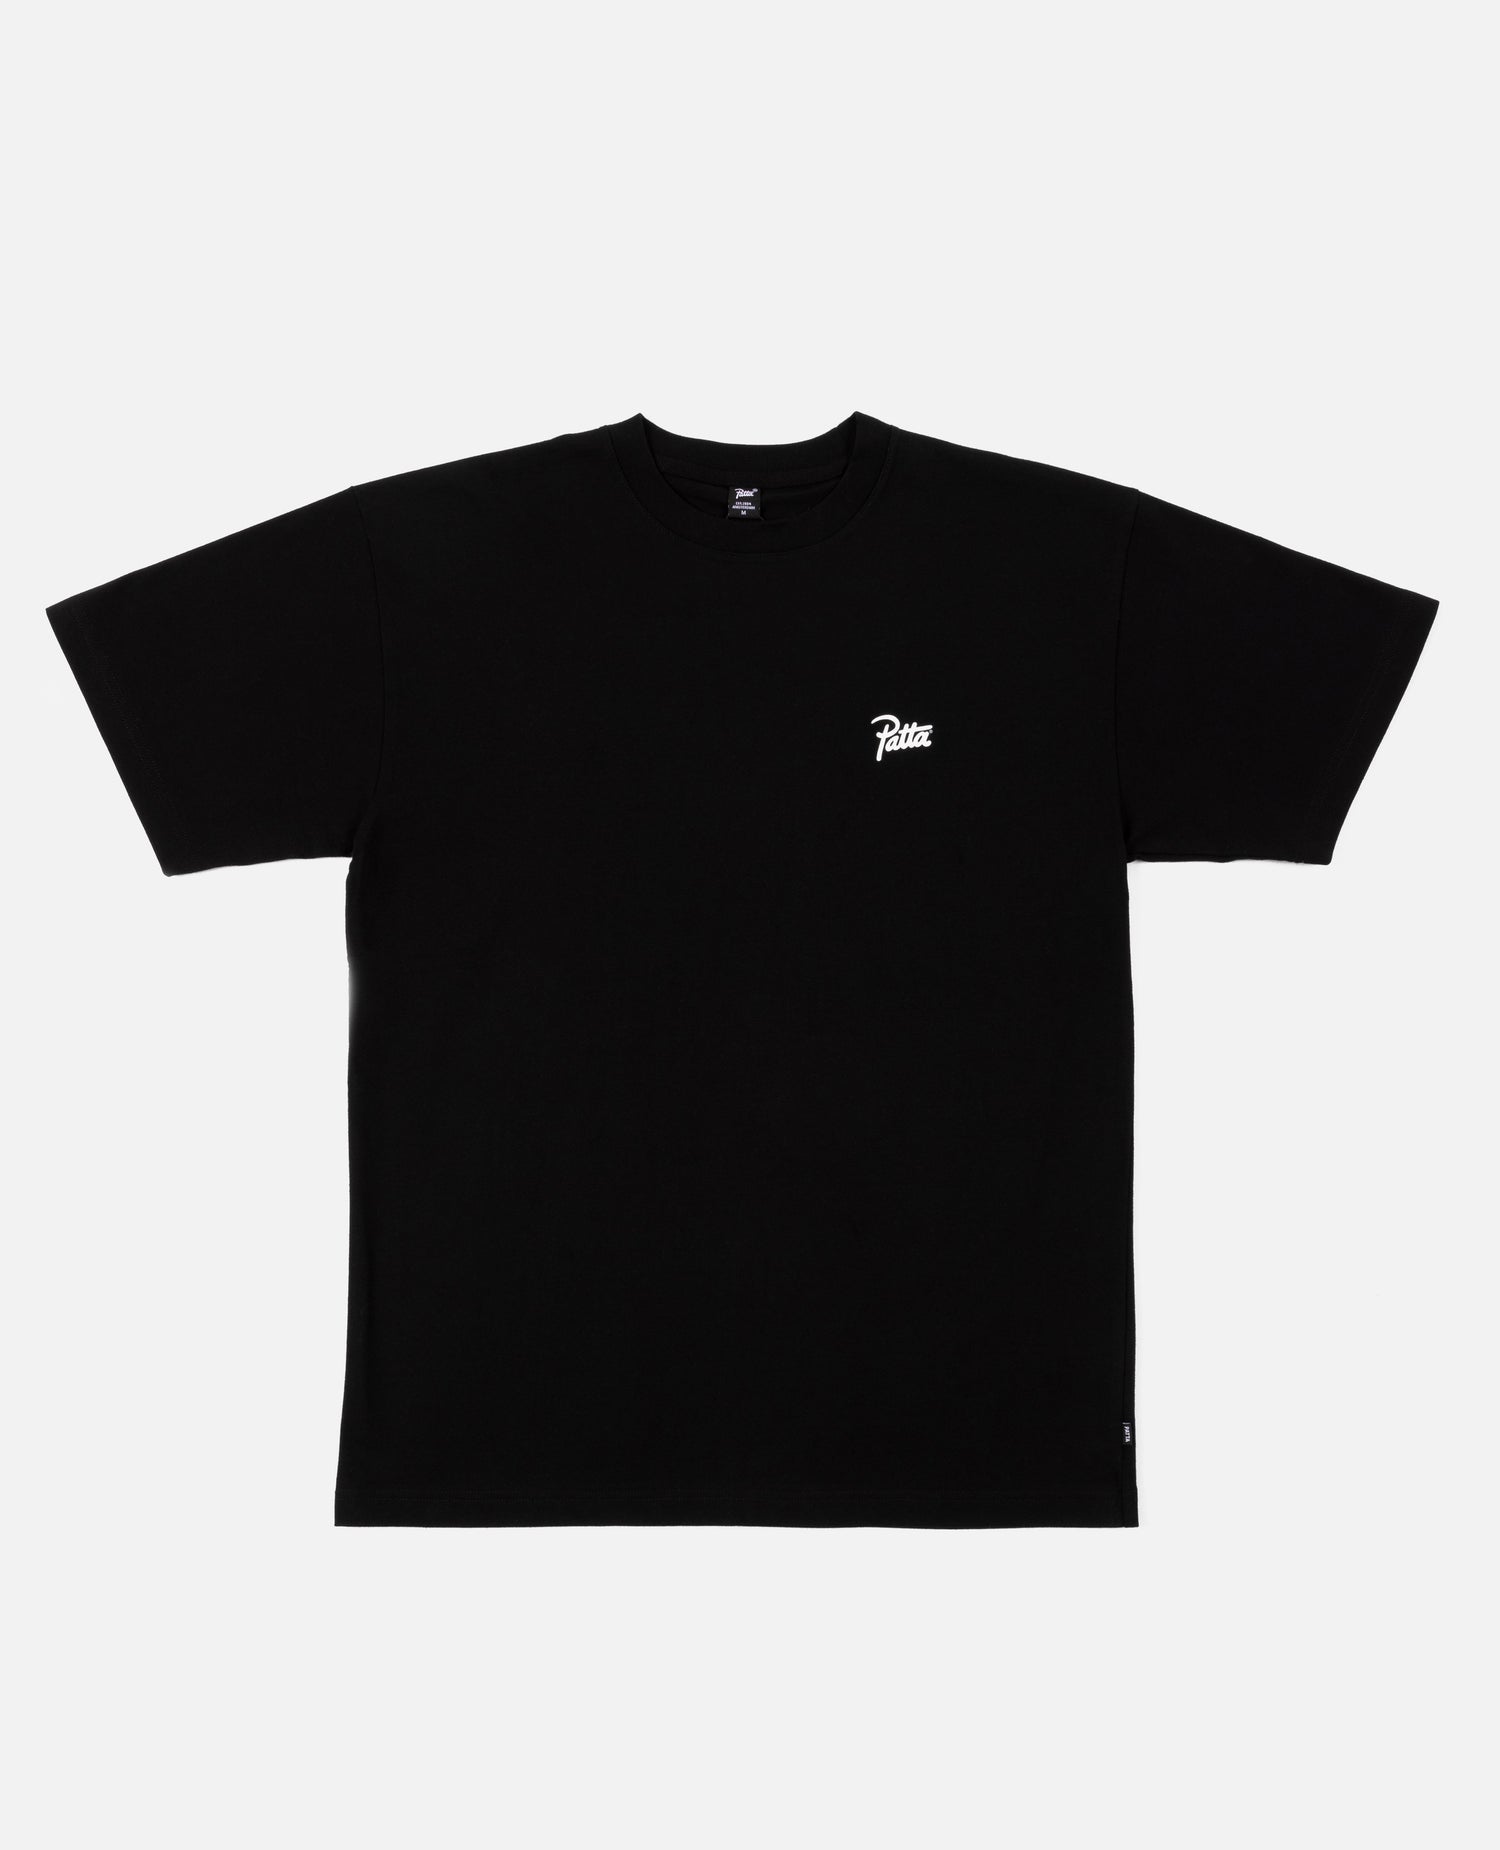 T-shirt clé Patta (noir)